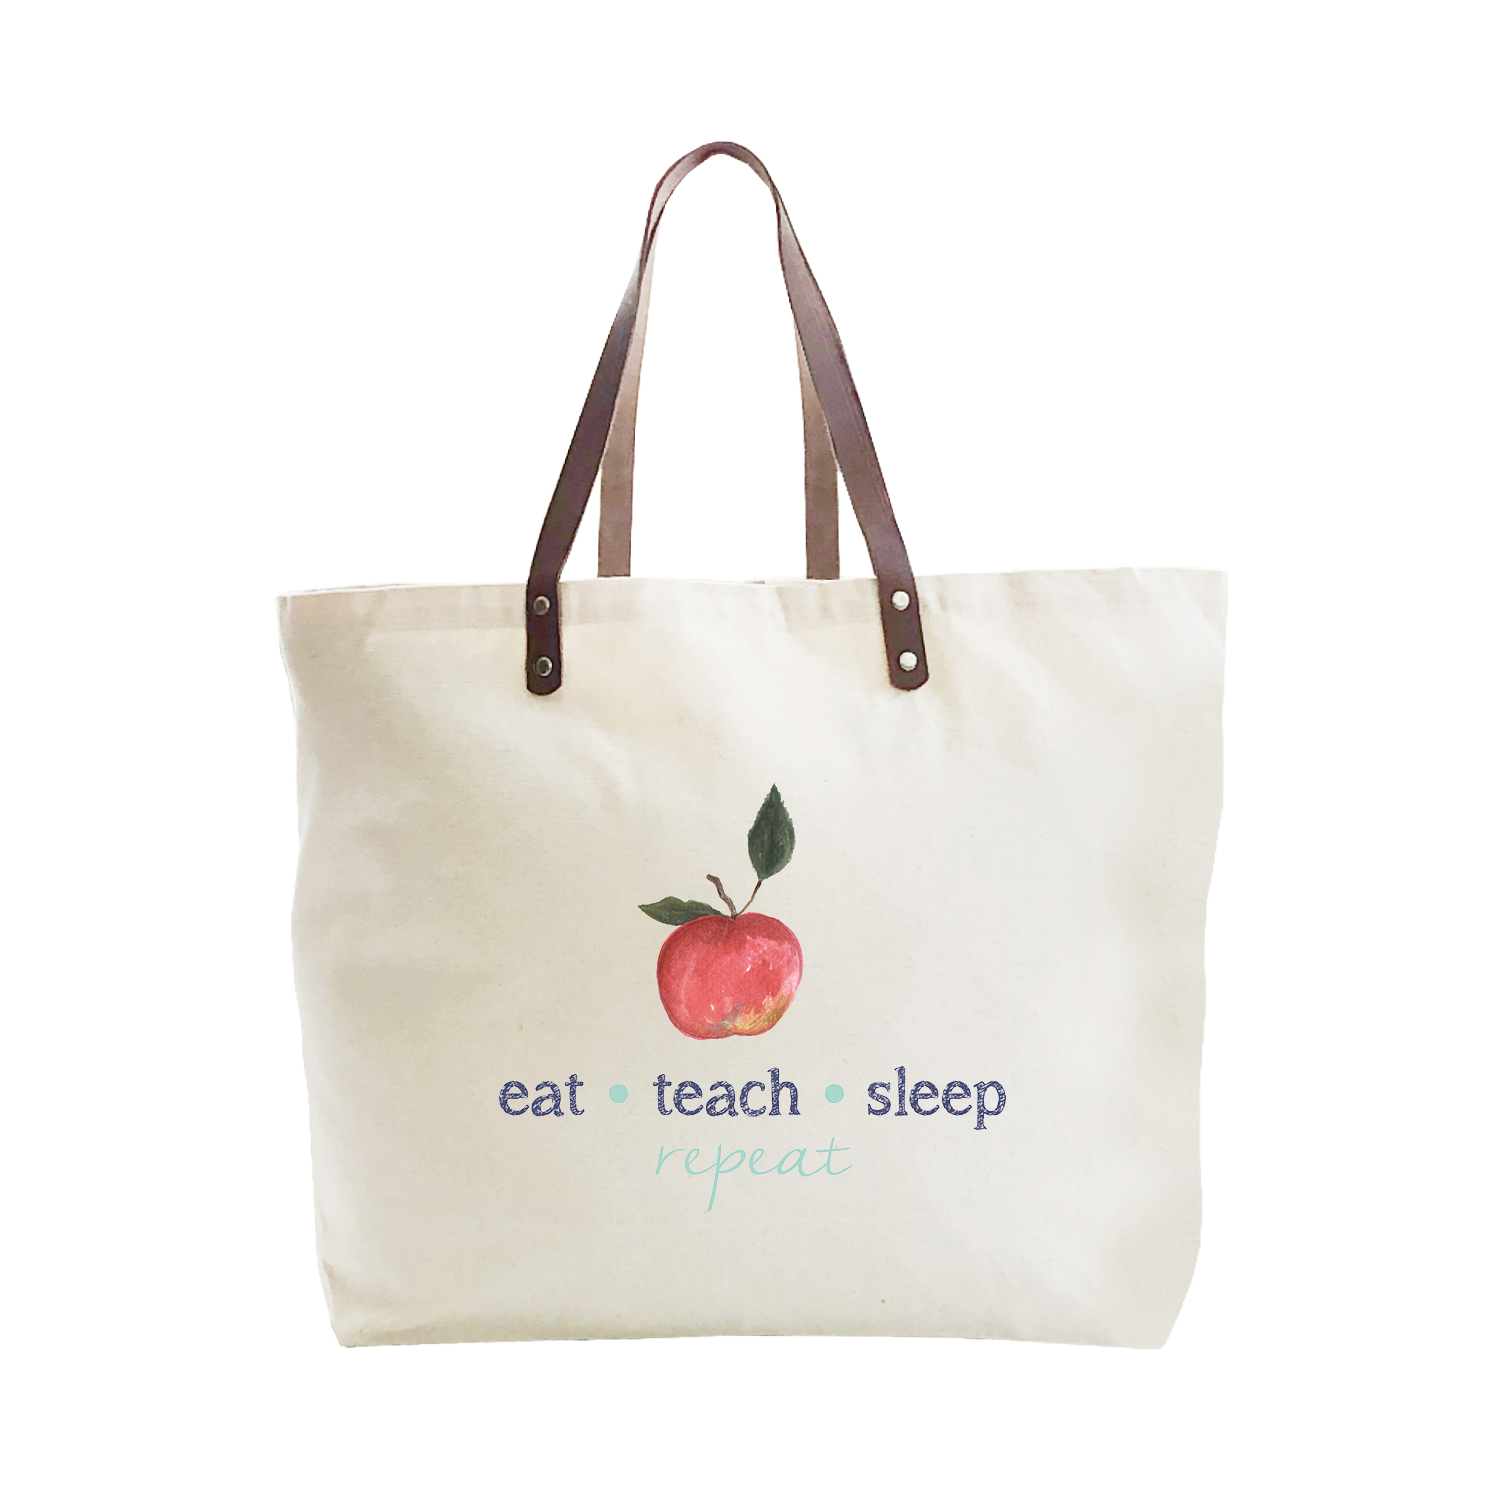 eat teach sleep repeat large tote